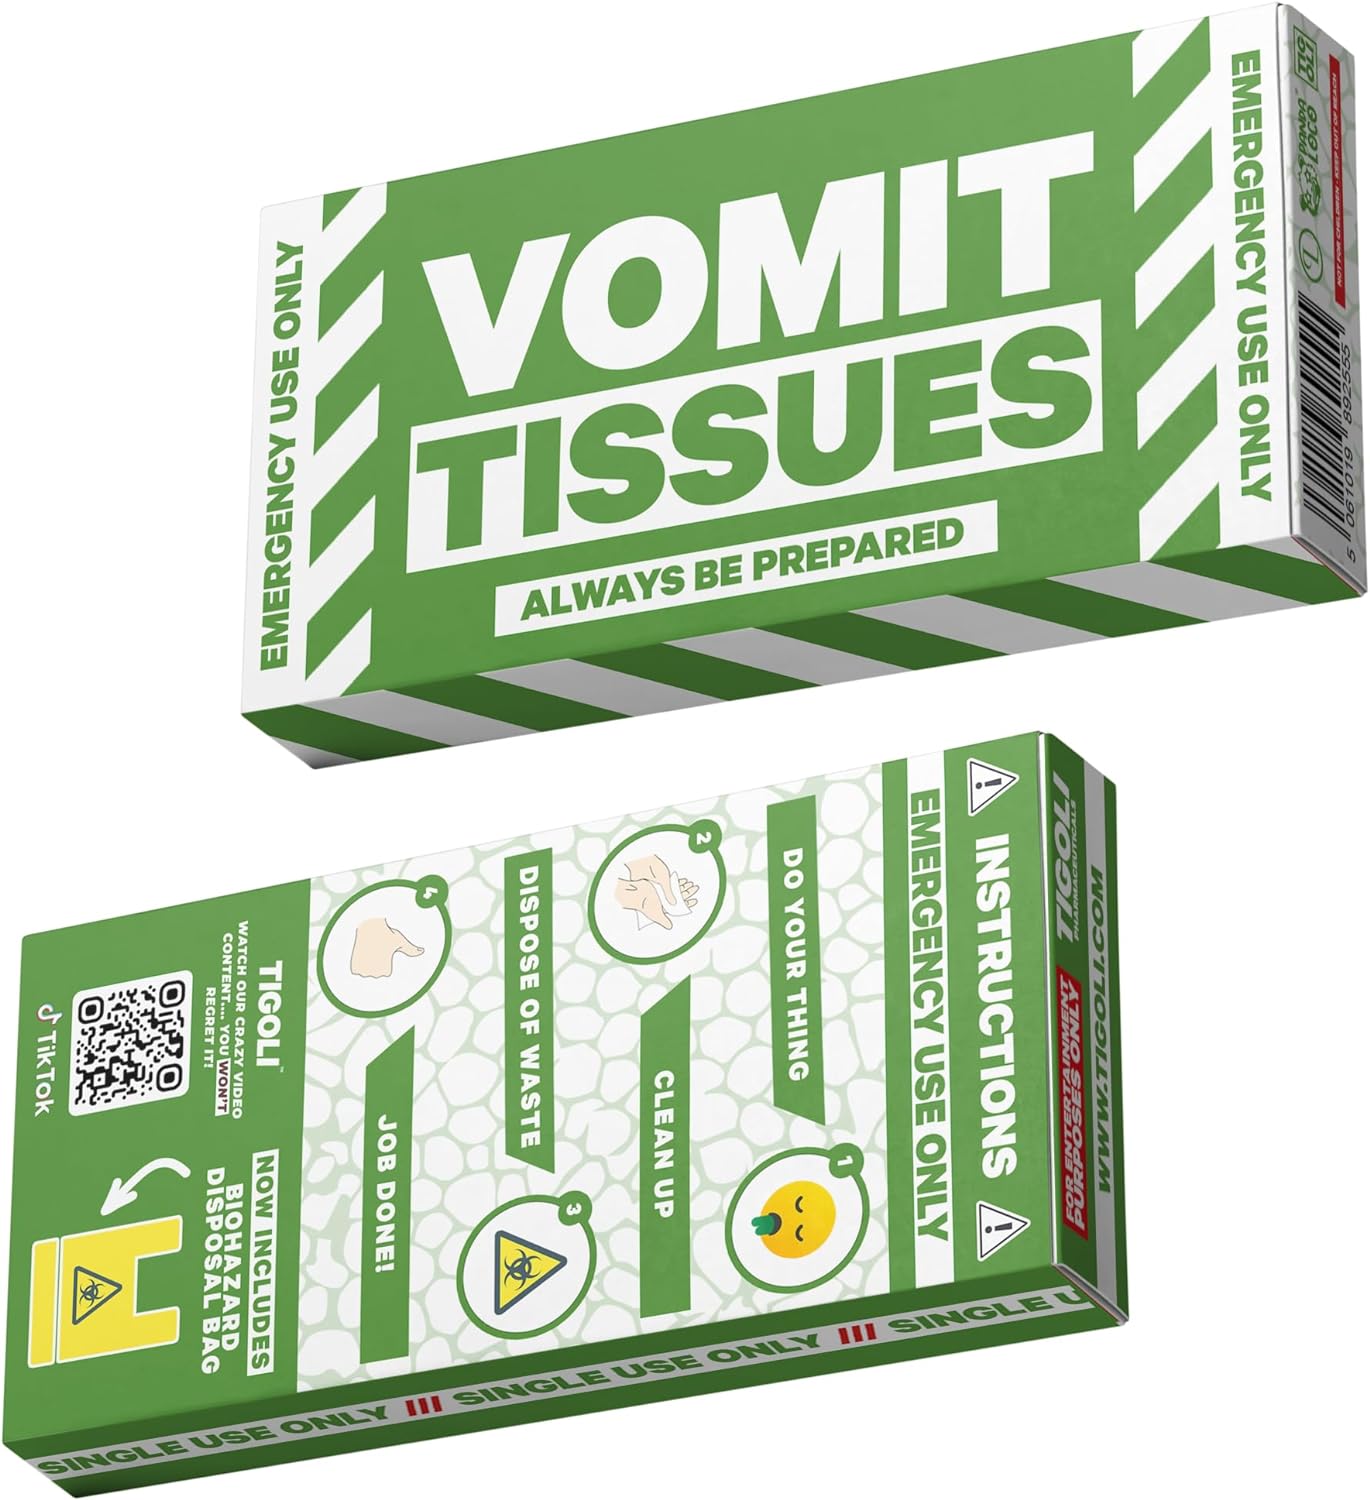 Emergency Vomit Tissues